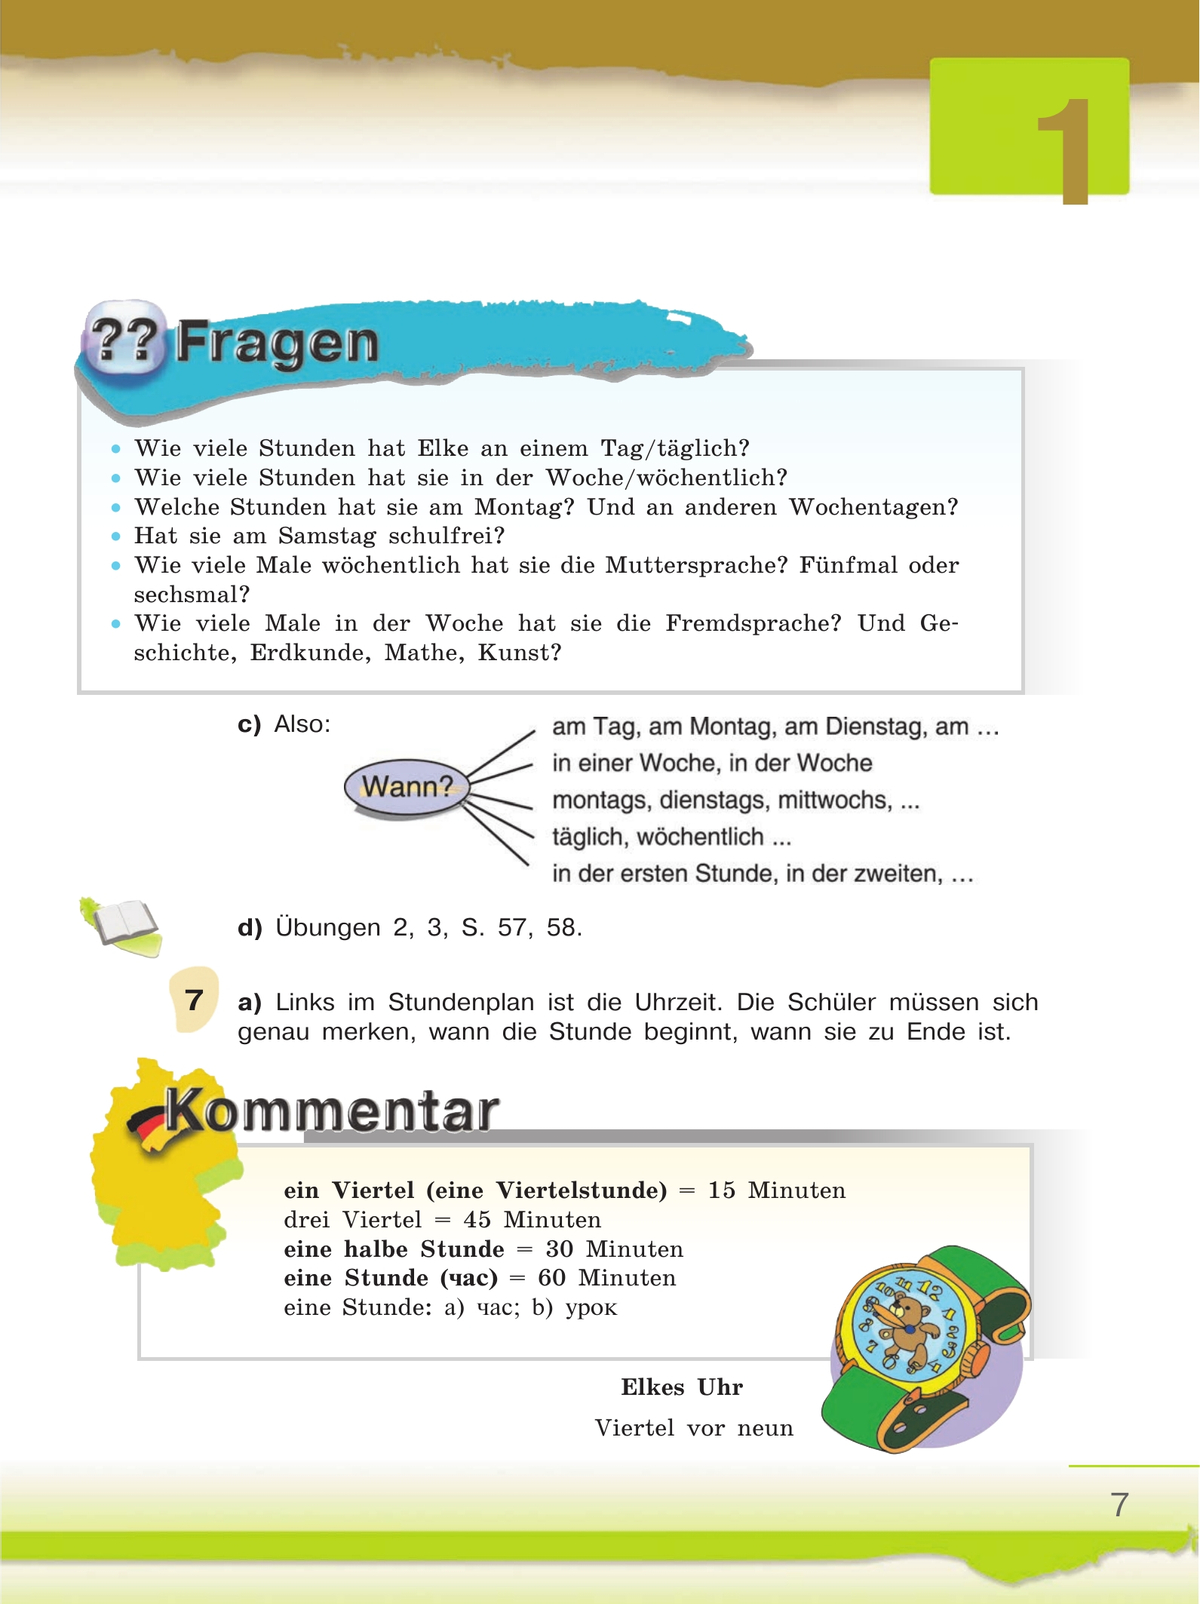 Немецкий язык. 6 класс. Учебник. В 2 ч. Часть 2 11